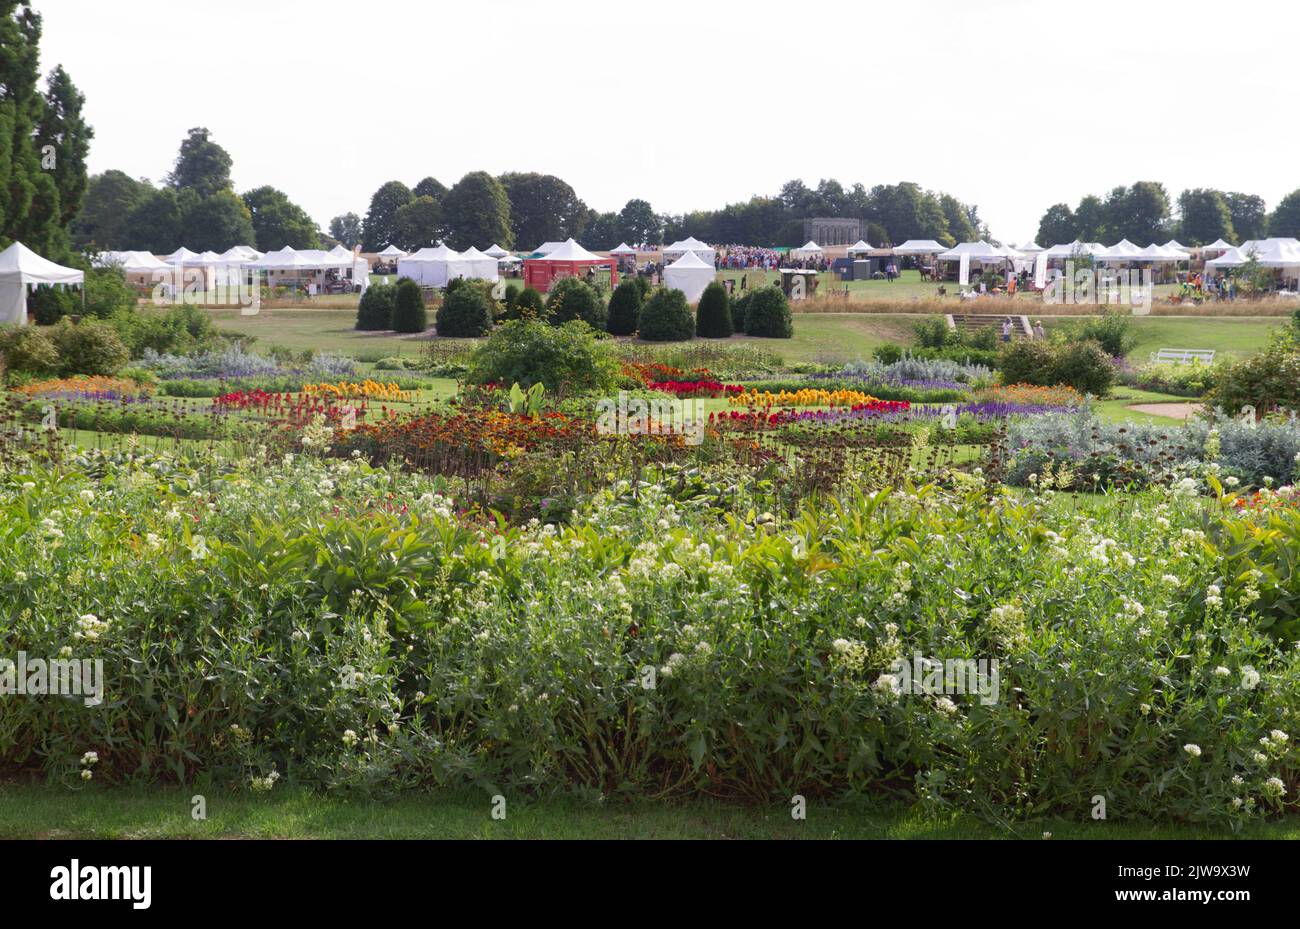 Vue sur le jardin de Parterre jusqu'au commerce se dresse au-delà lors de la première foire mondiale d'automne 2022 des jardiniers qui s'est tenue à Audley End dans l'Essex. Banque D'Images